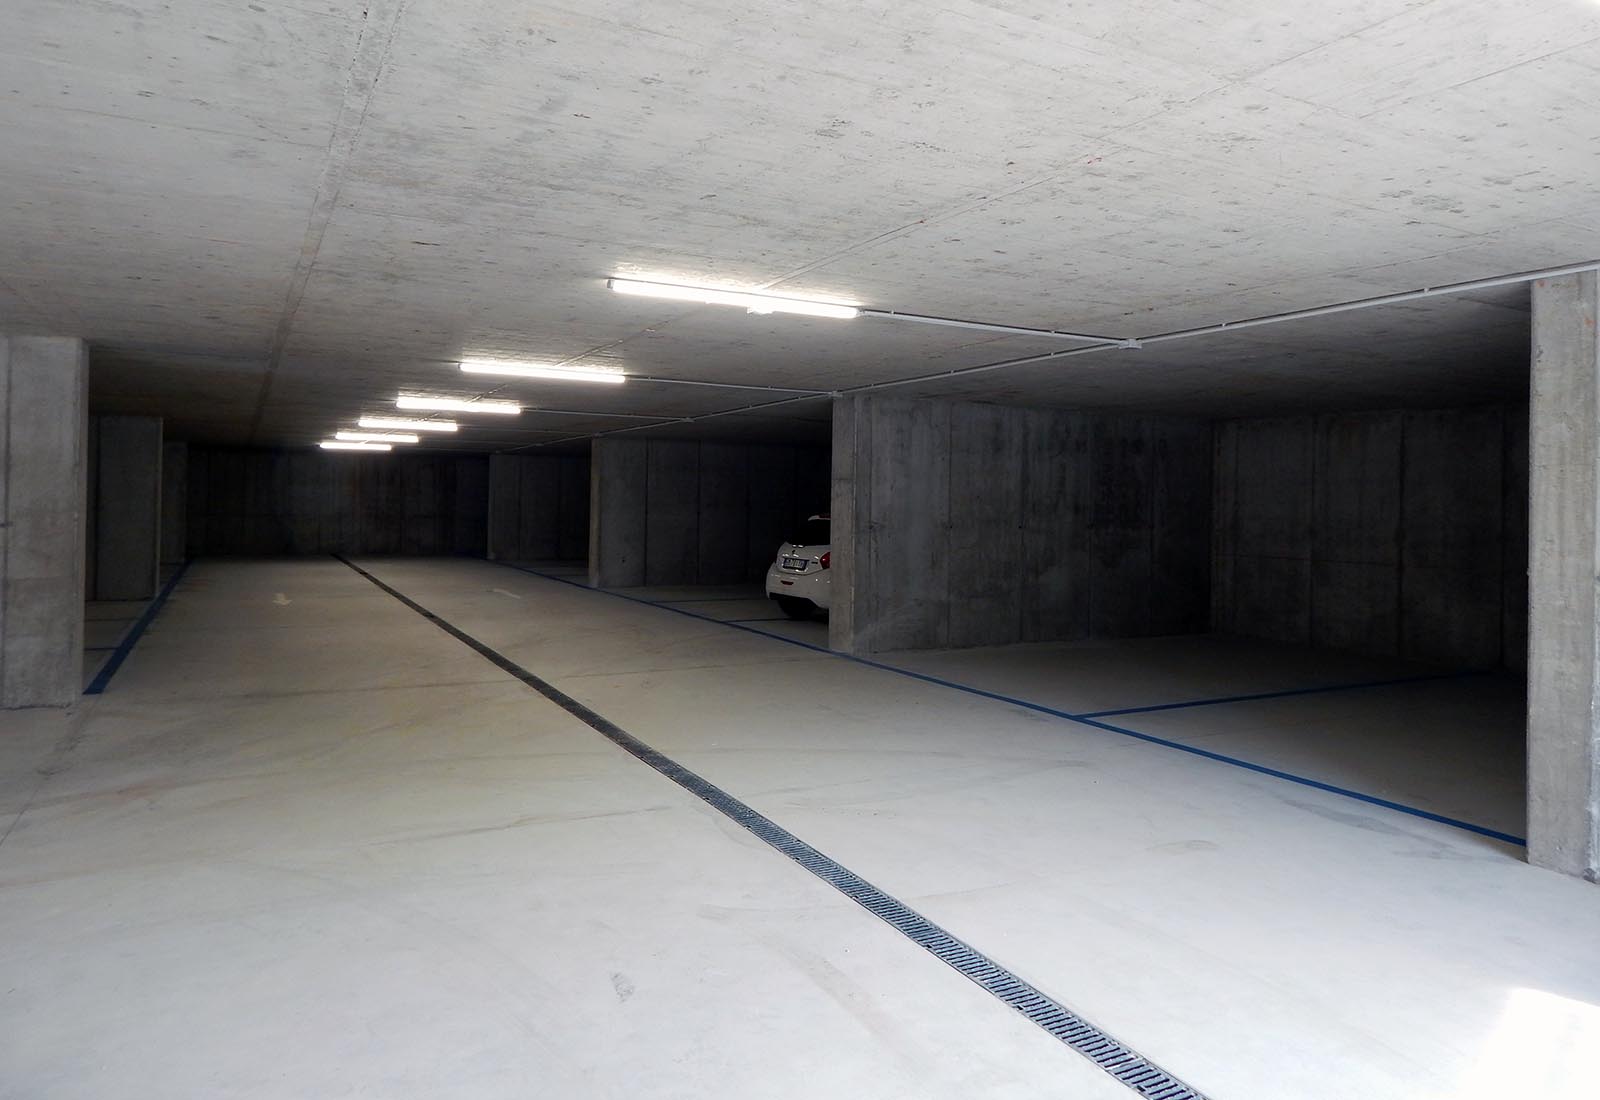 Public underground garage in Gravedona - Lower parking area